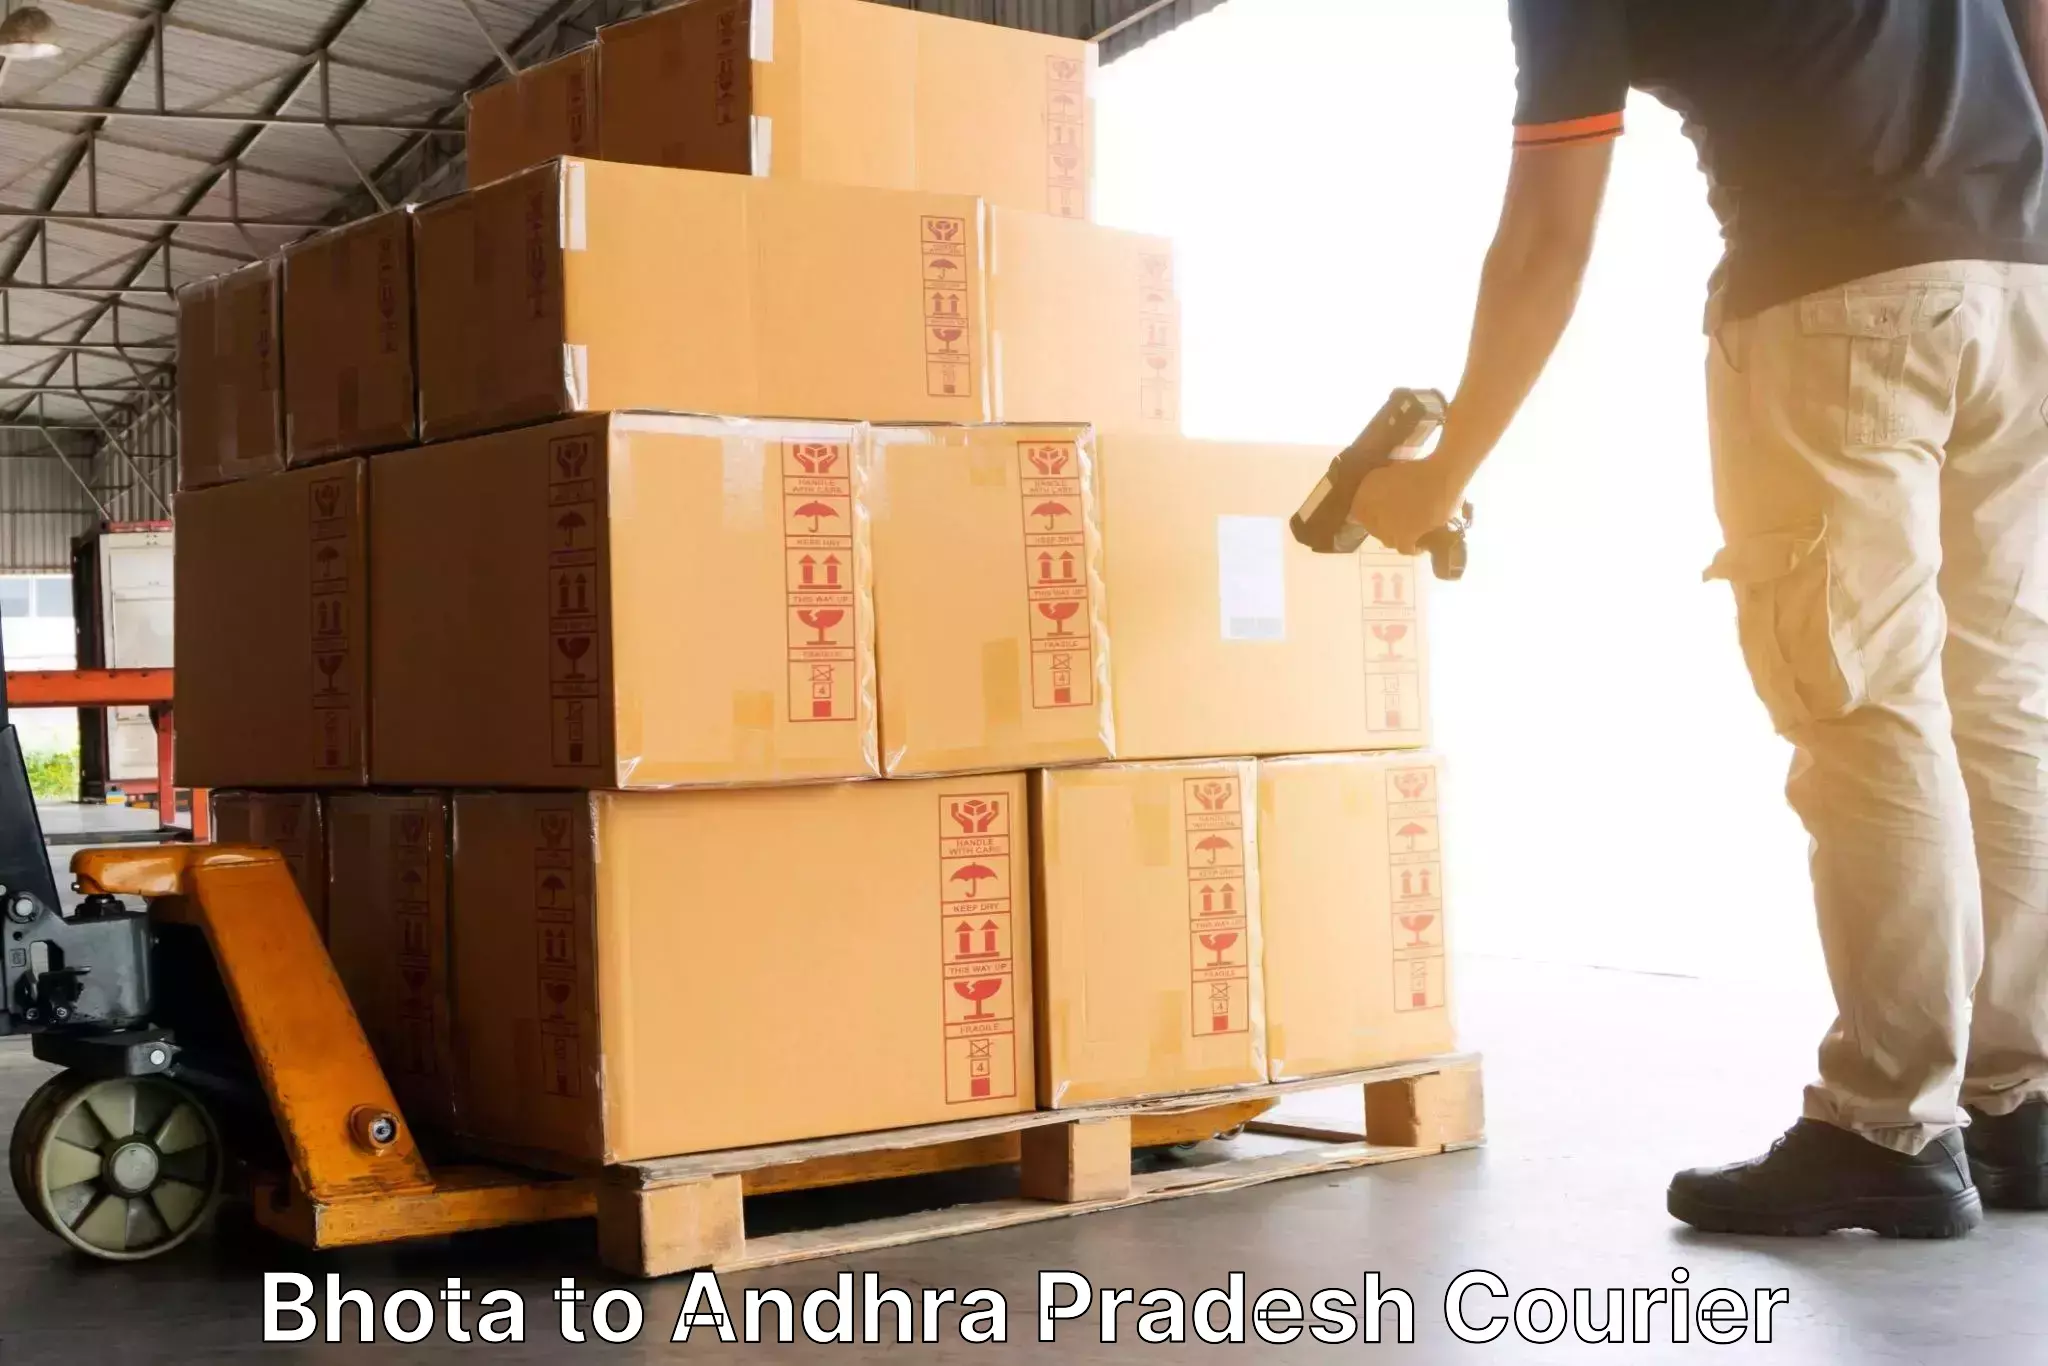 Global delivery options Bhota to Jammalamadugu